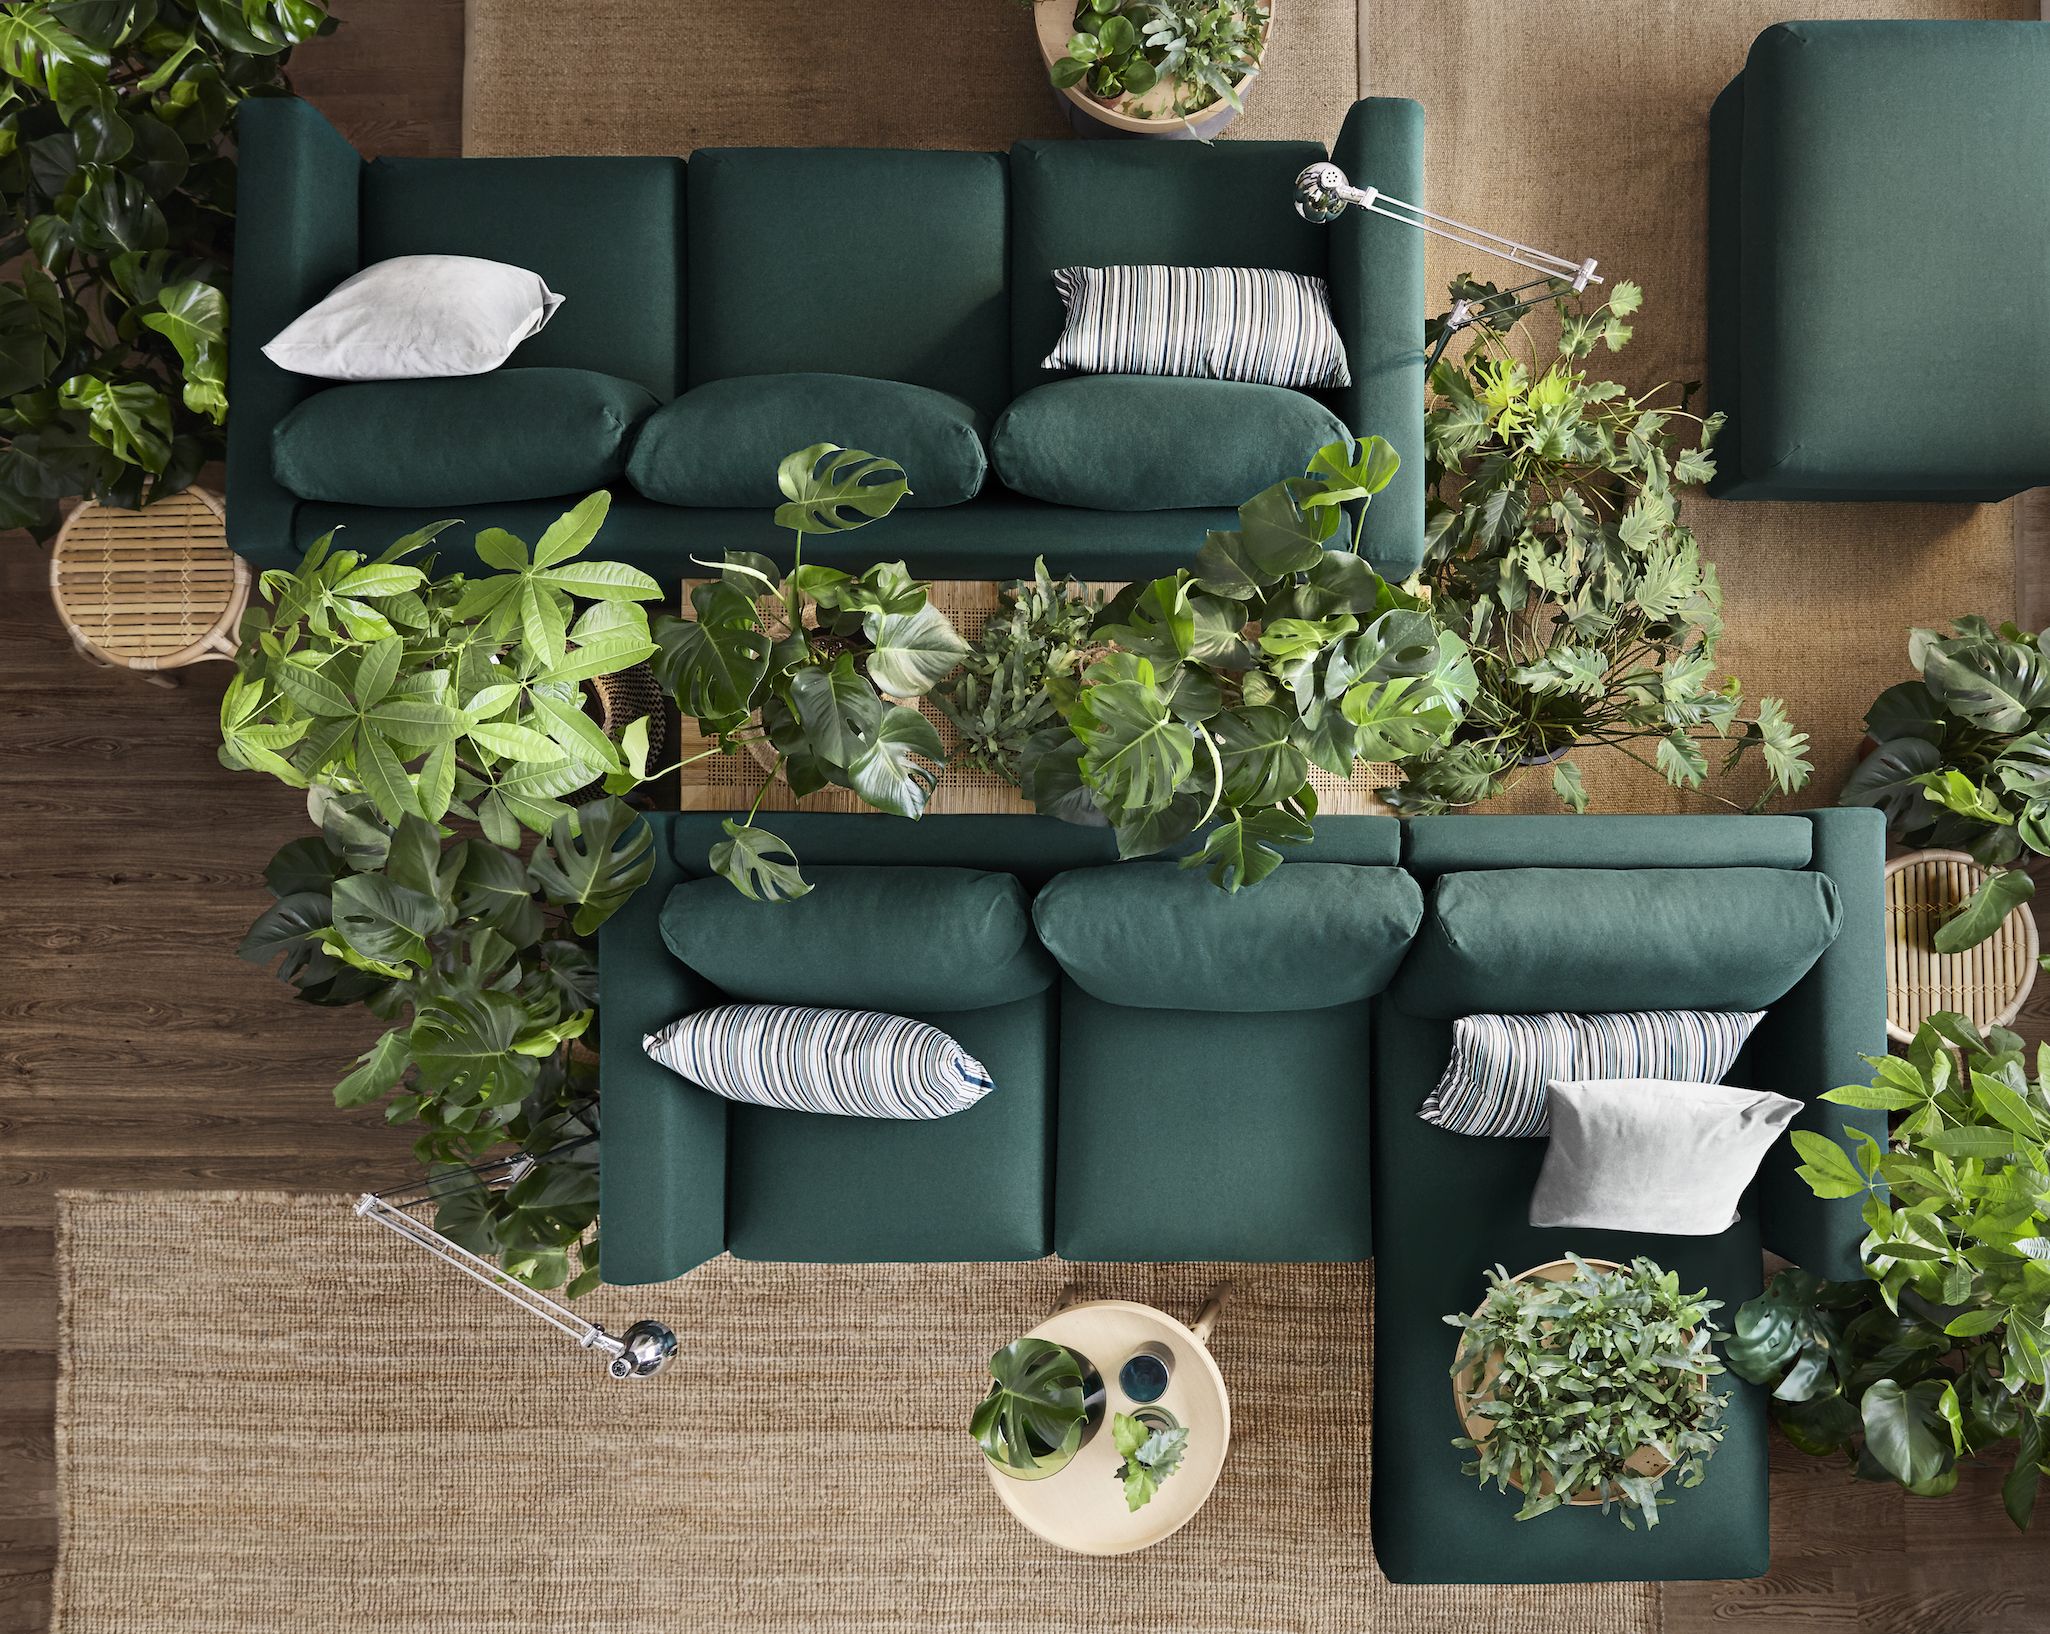 Tempusfugitiv: Ikea Vimle Sofa With Chaise Assembly